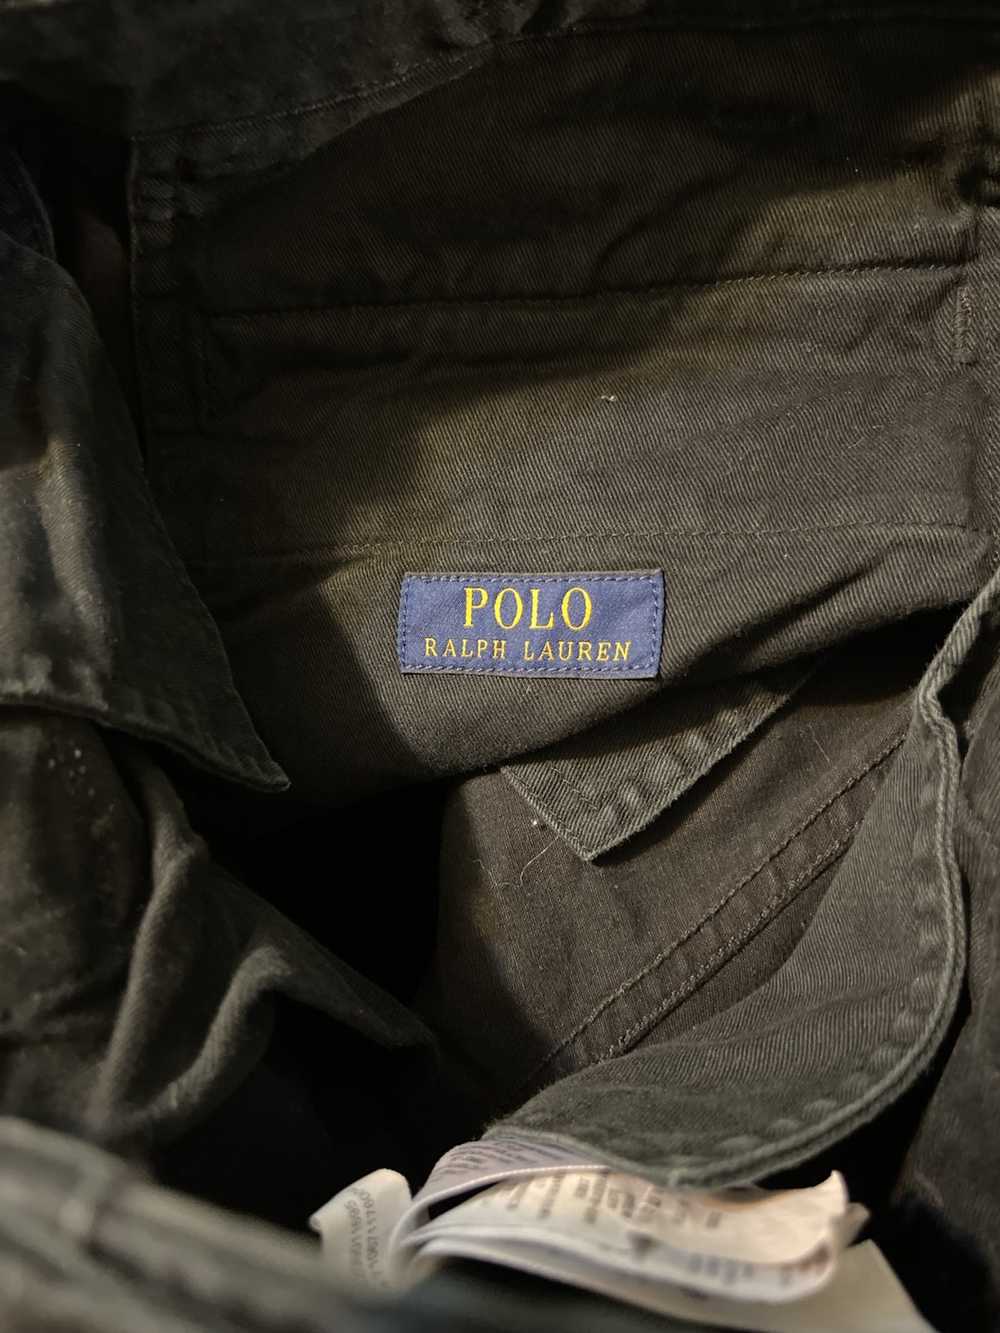 Polo Ralph Lauren Polo Ralph Lauren Cargo pants - image 4